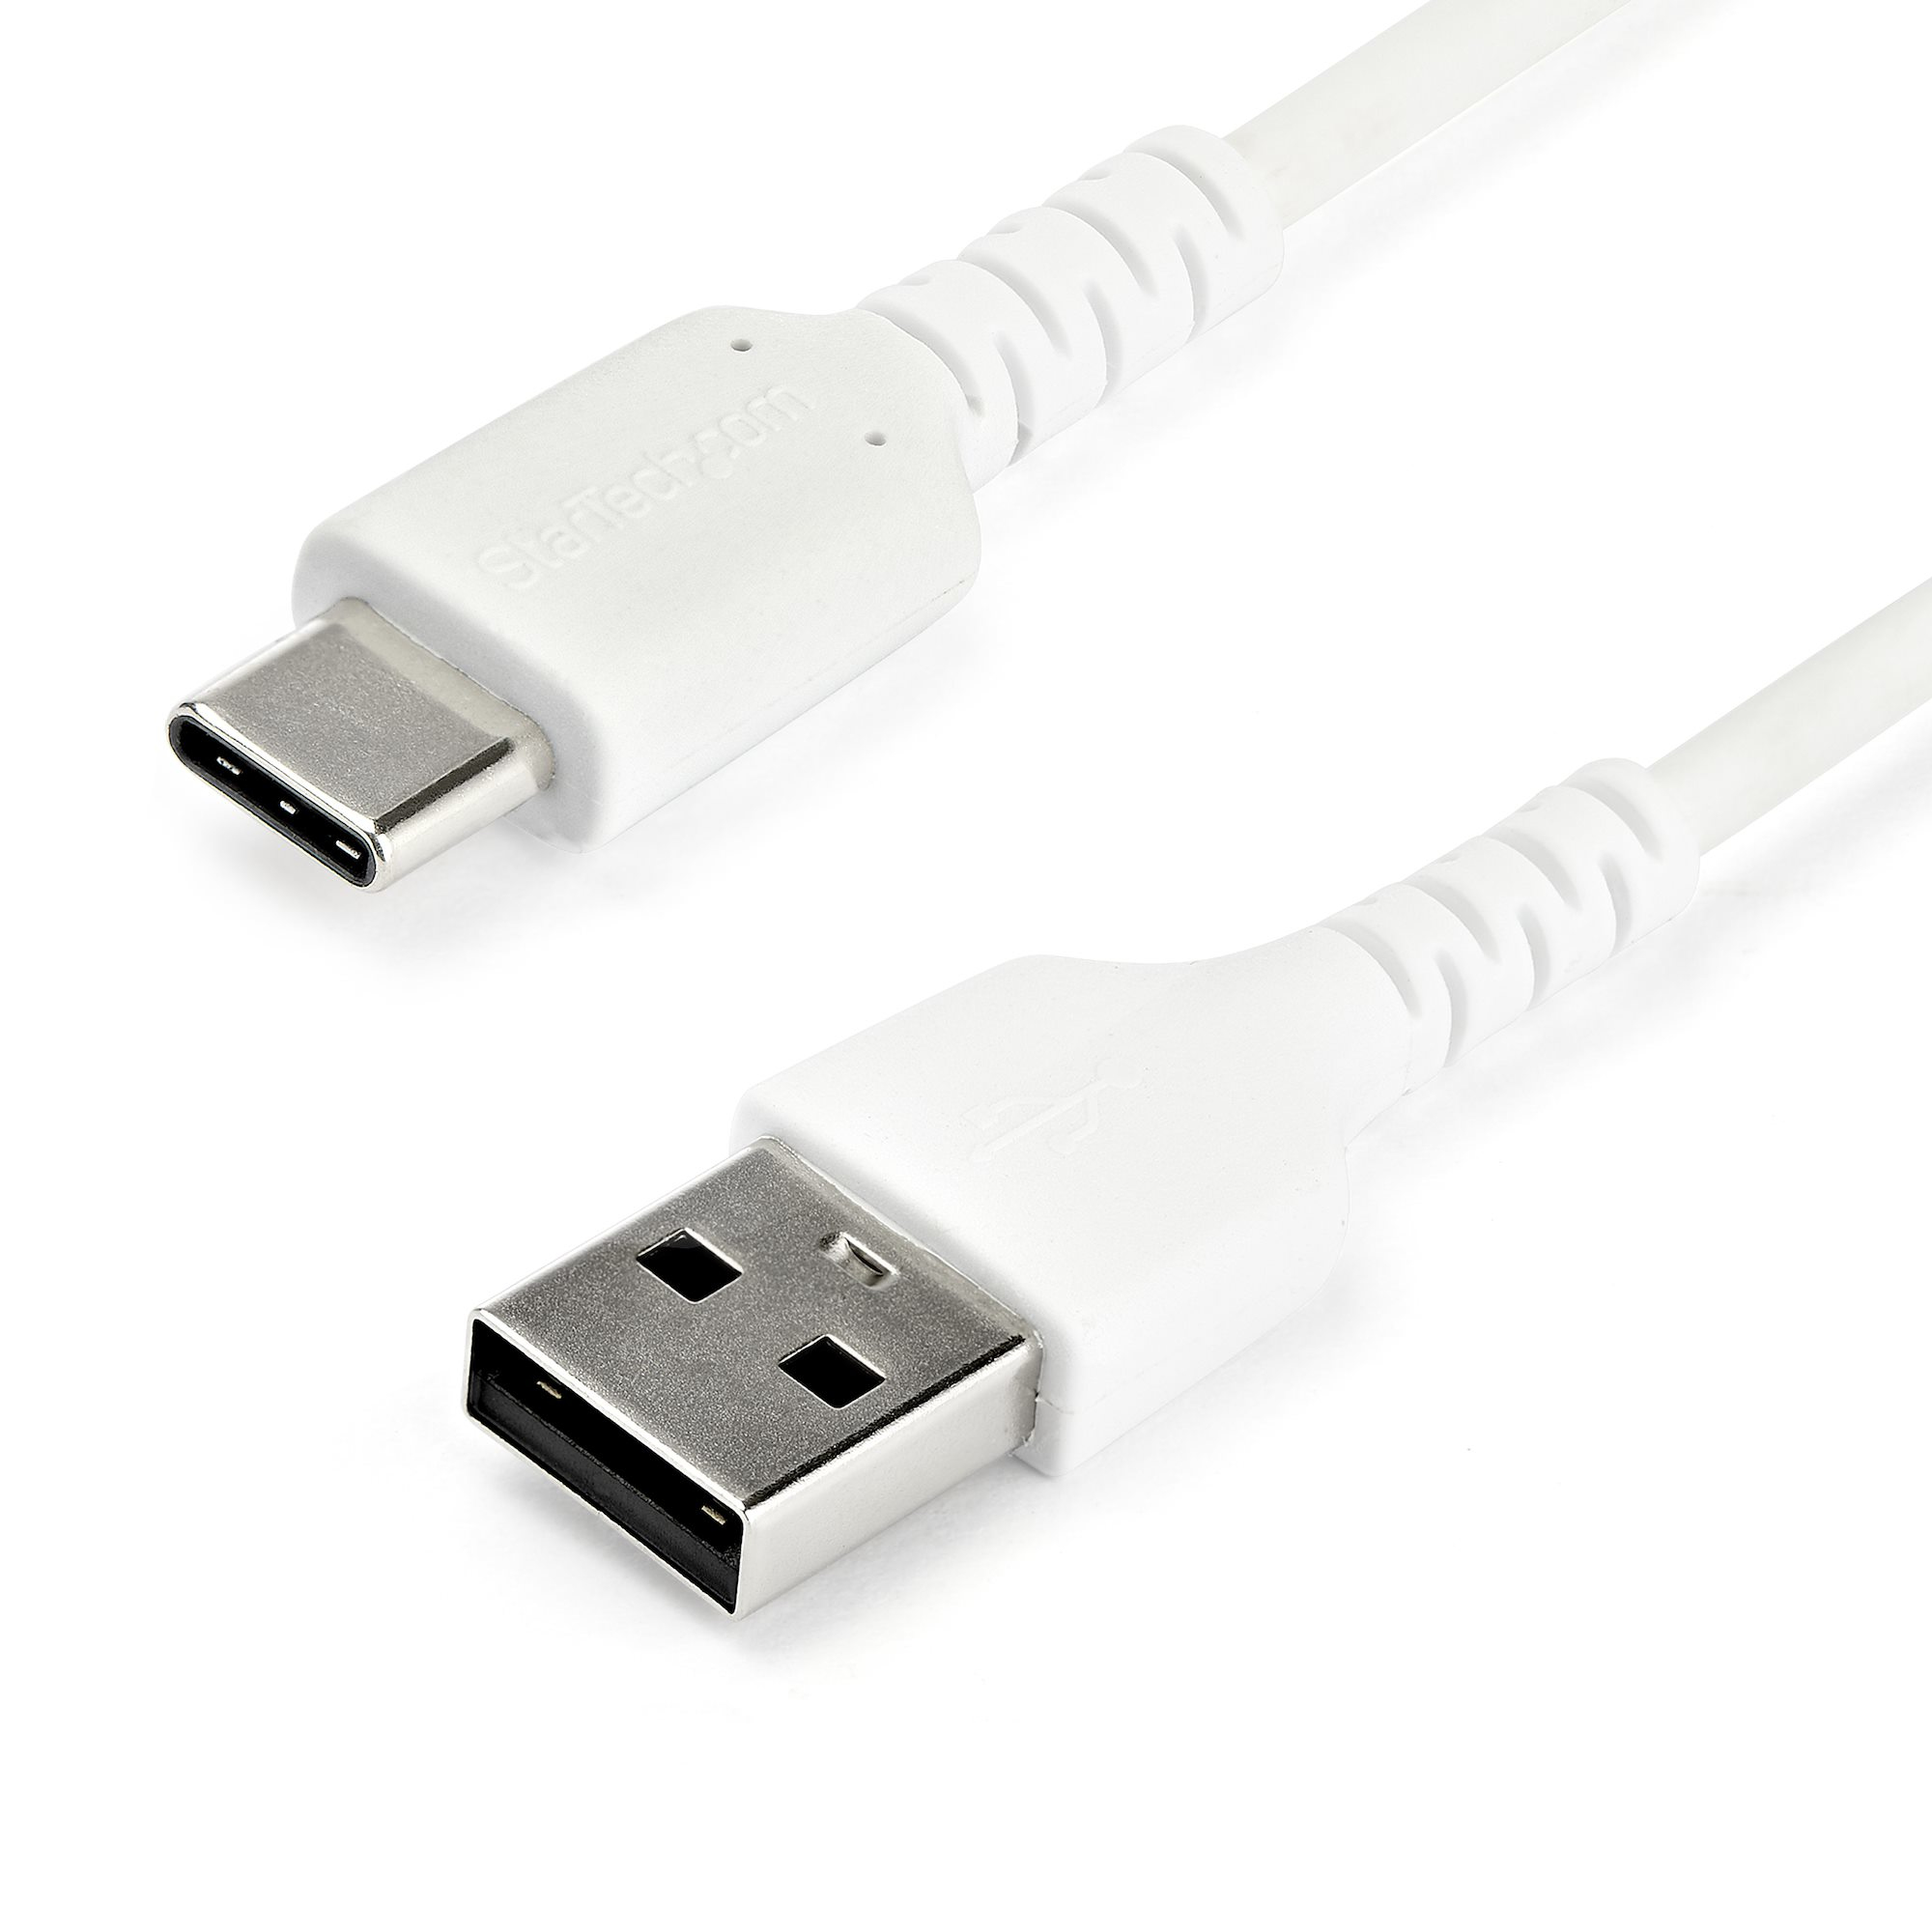 StarTech.com 2m USB-A auf USB-C Ladekabel - Dauerhaftes USB 2.0 auf USB Typ-C Datenübertragungs- und Schnellladekabel - Robuster TPE-Mantel Aramidfaser, M/M, 3A - Weiß (RUSB2AC2MW)